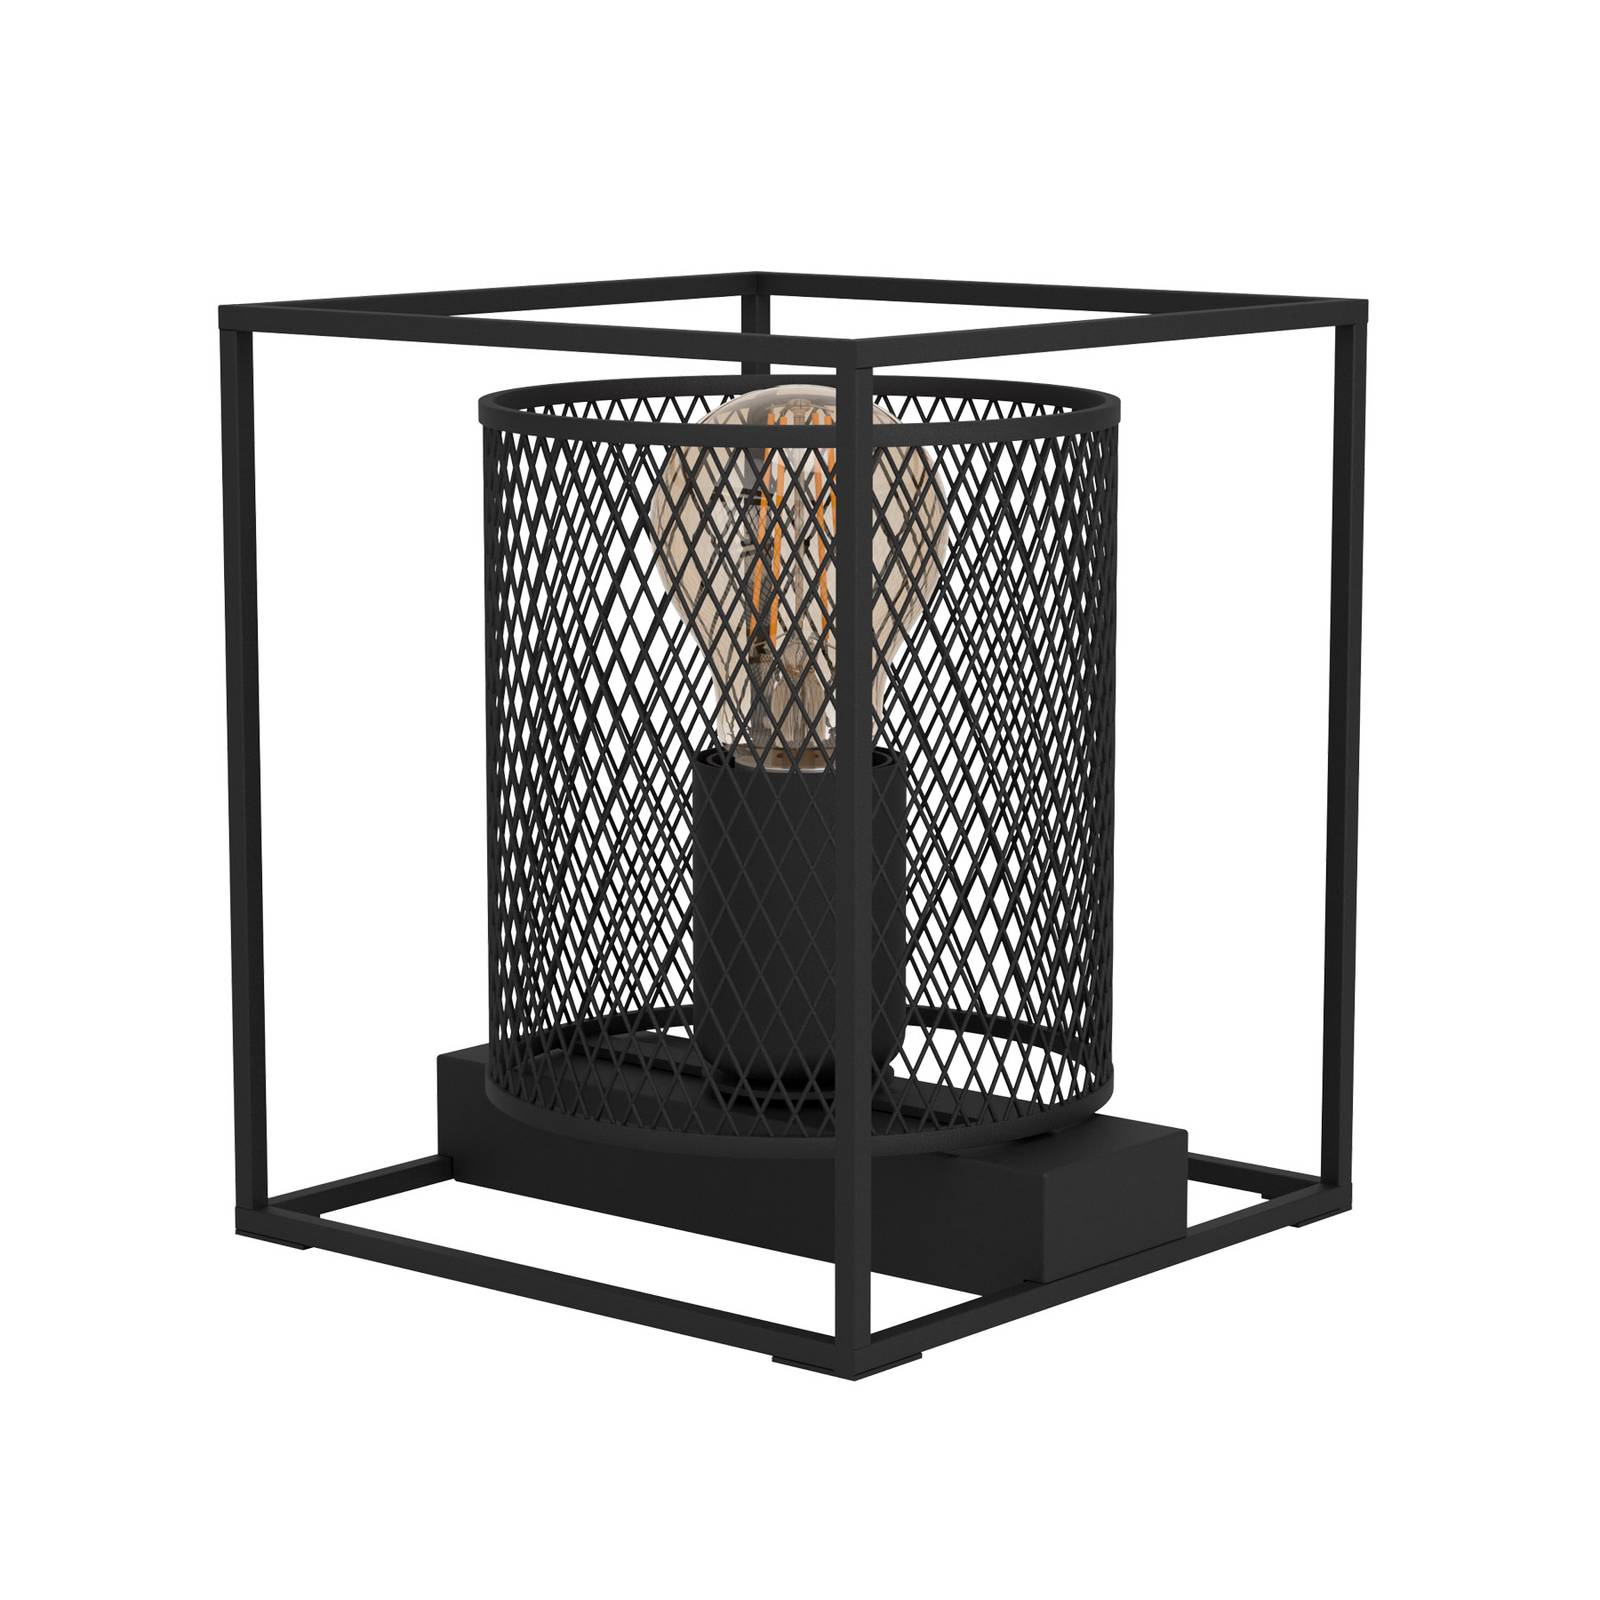 EGLO Tischleuchte Catterick, schwarz, ein Käfigschirm